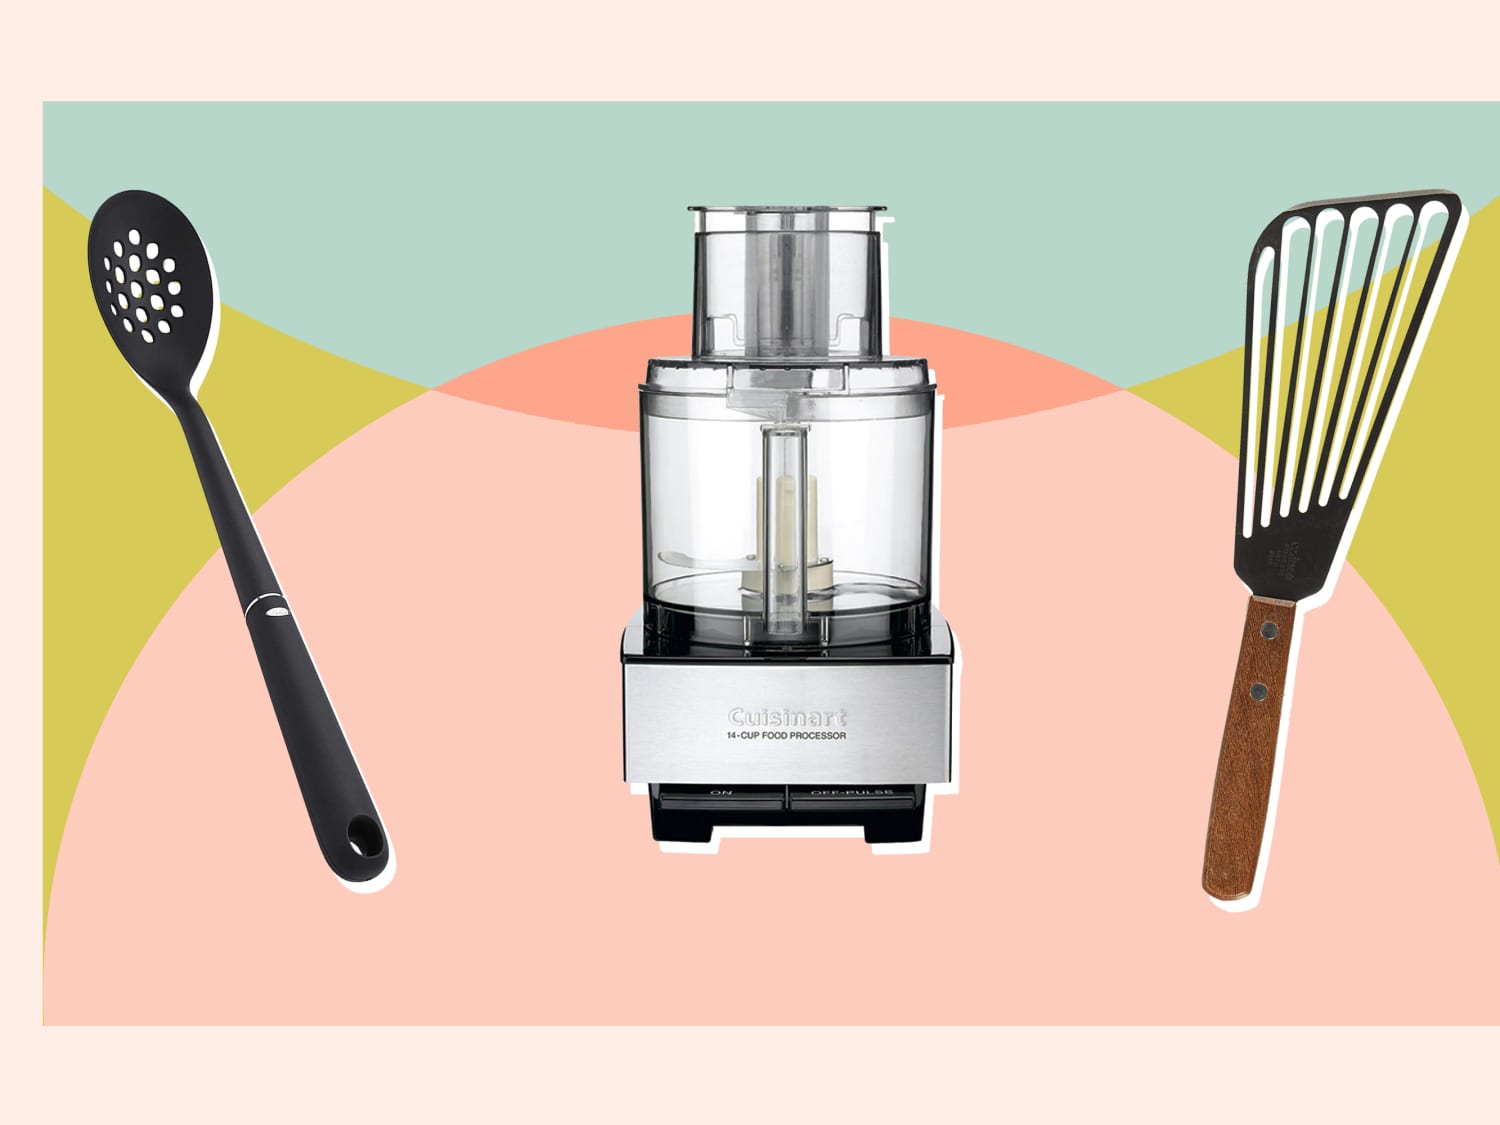 6 of Ina Garten's Favorite Kitchen Gadgets